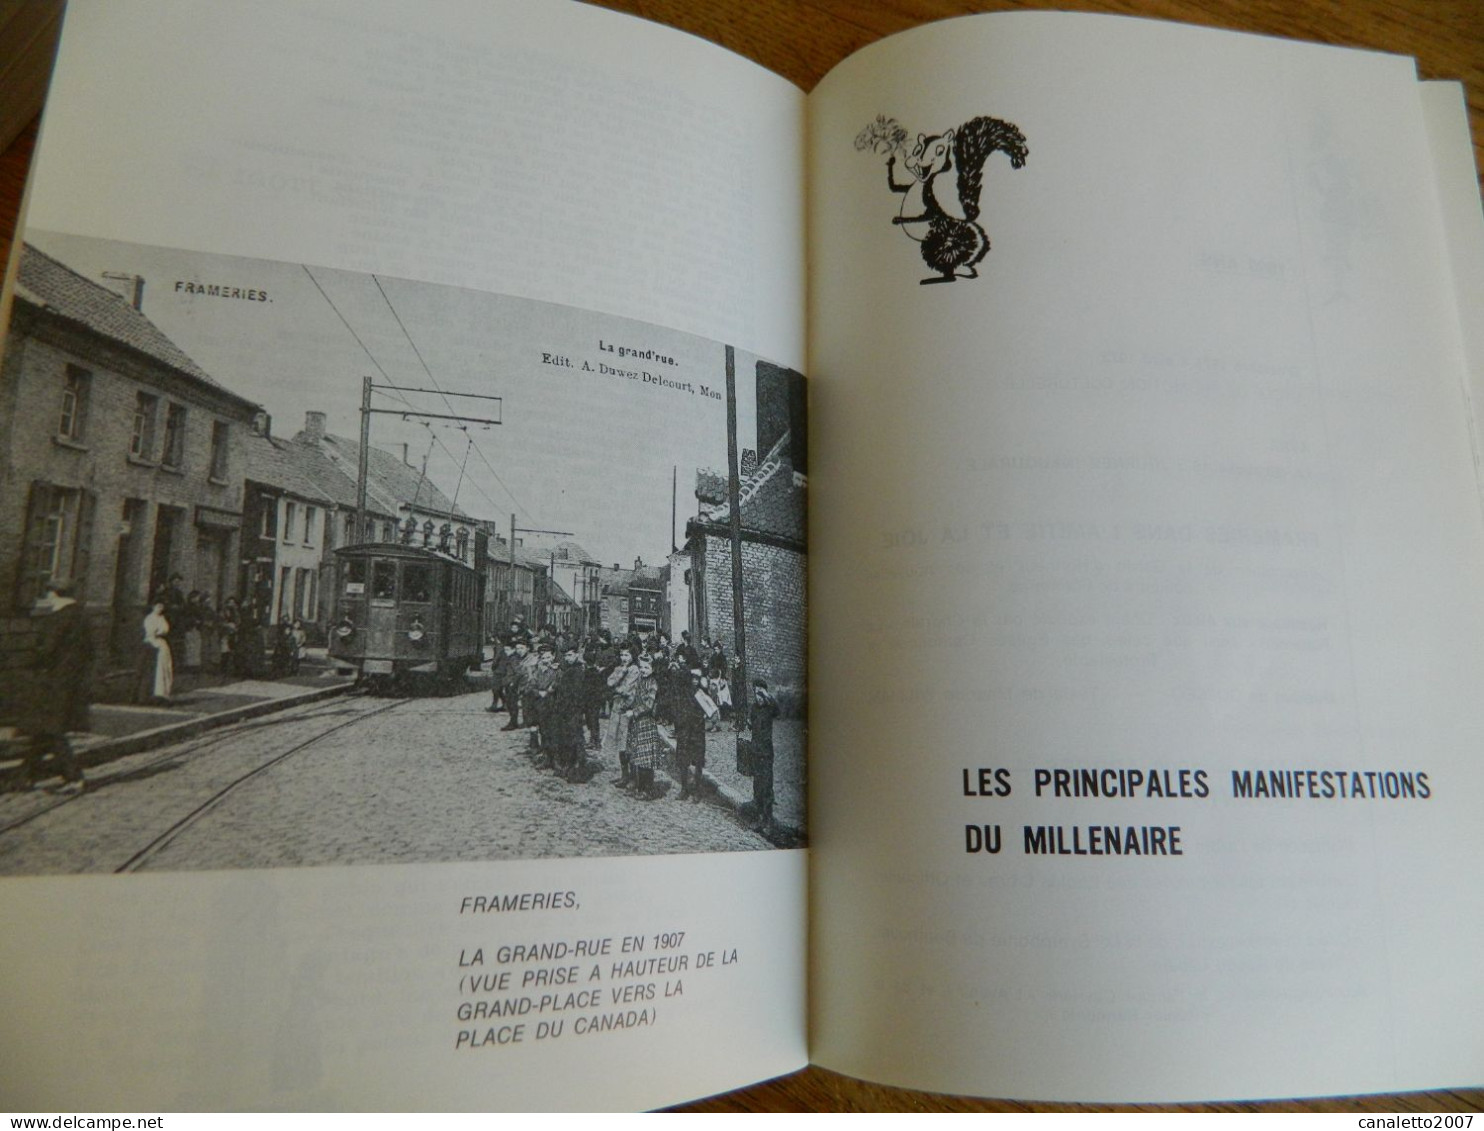 FRAMERIES: FRAMERIES MILLE  ANS -LIVRE  DE 1972  32 PAGES - Belgium